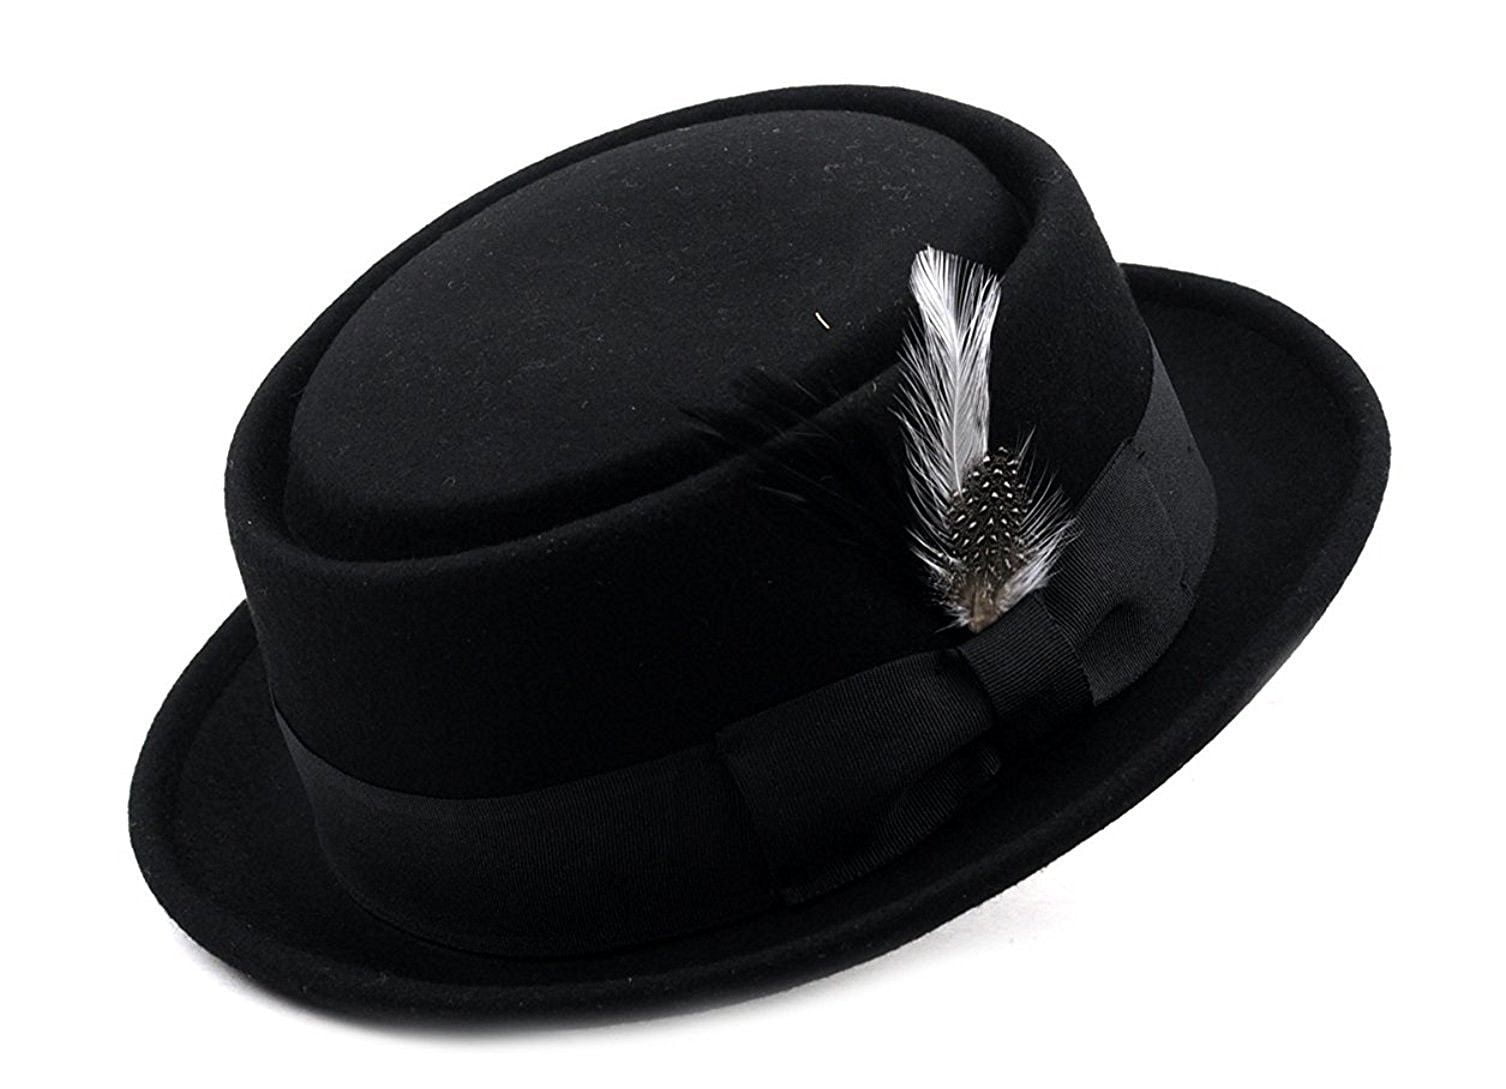 Pork Pie Hats for Men/Women 100% Wool Felt Hat Stout Porkpie Breaking Bad Hat Flat Top Fedora Hats Boater Derby Crushable